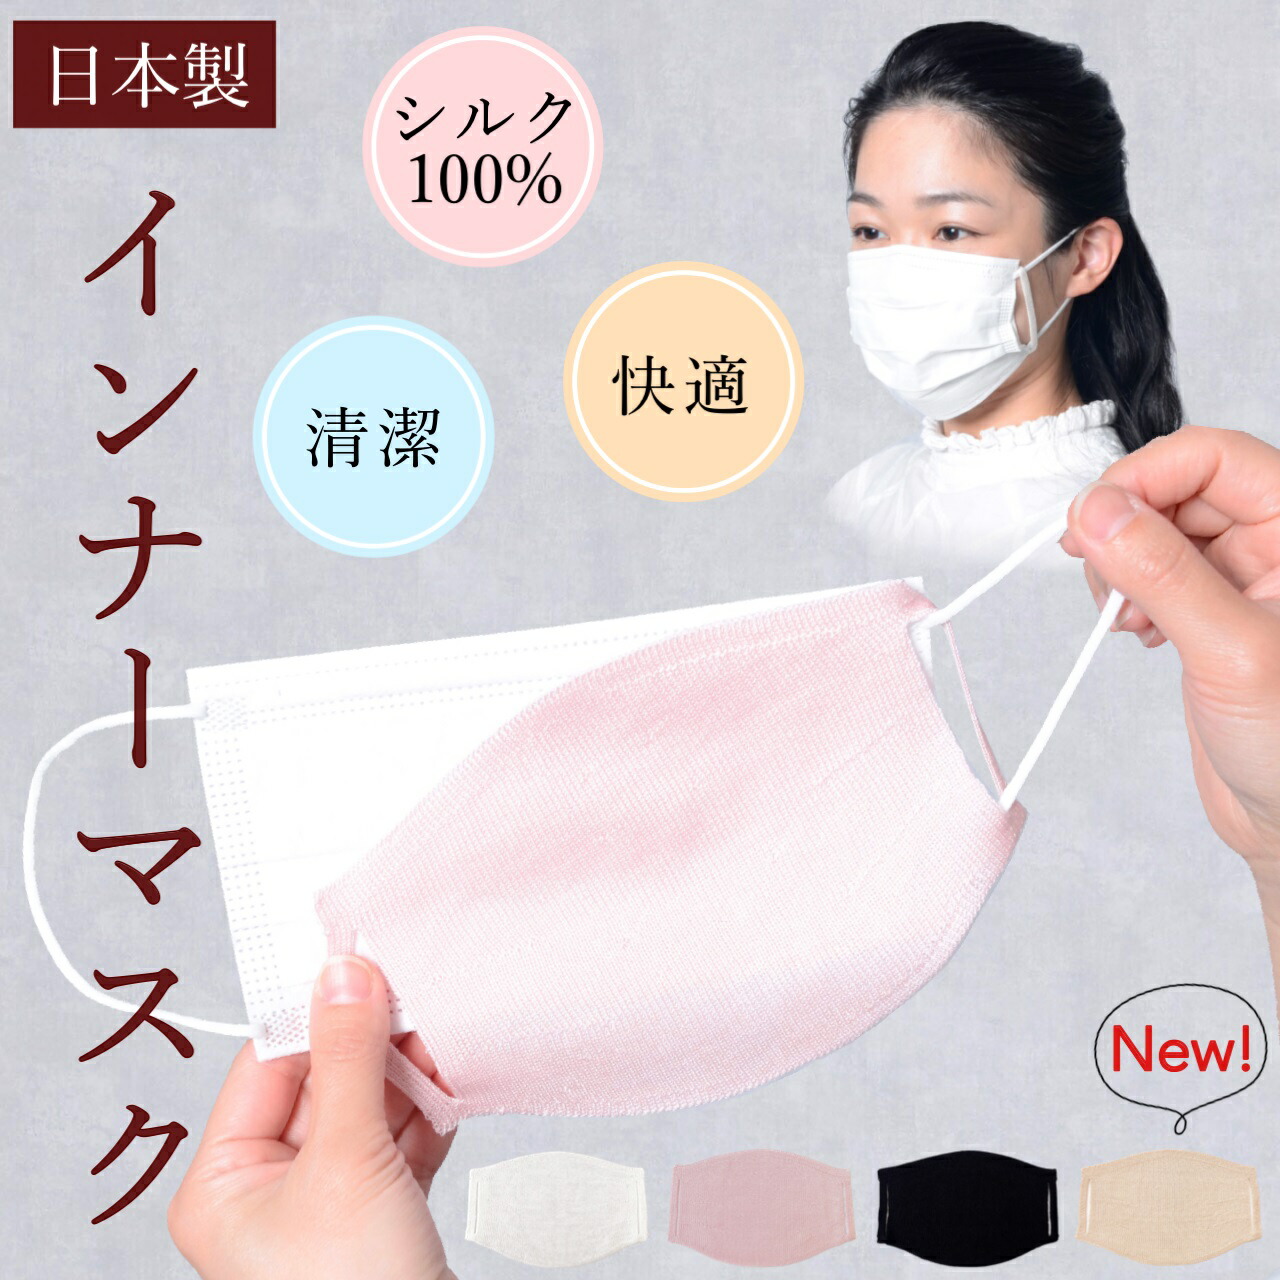 インナーマスク シルク 100% 洗える マスク 日本製 送料無料 保湿